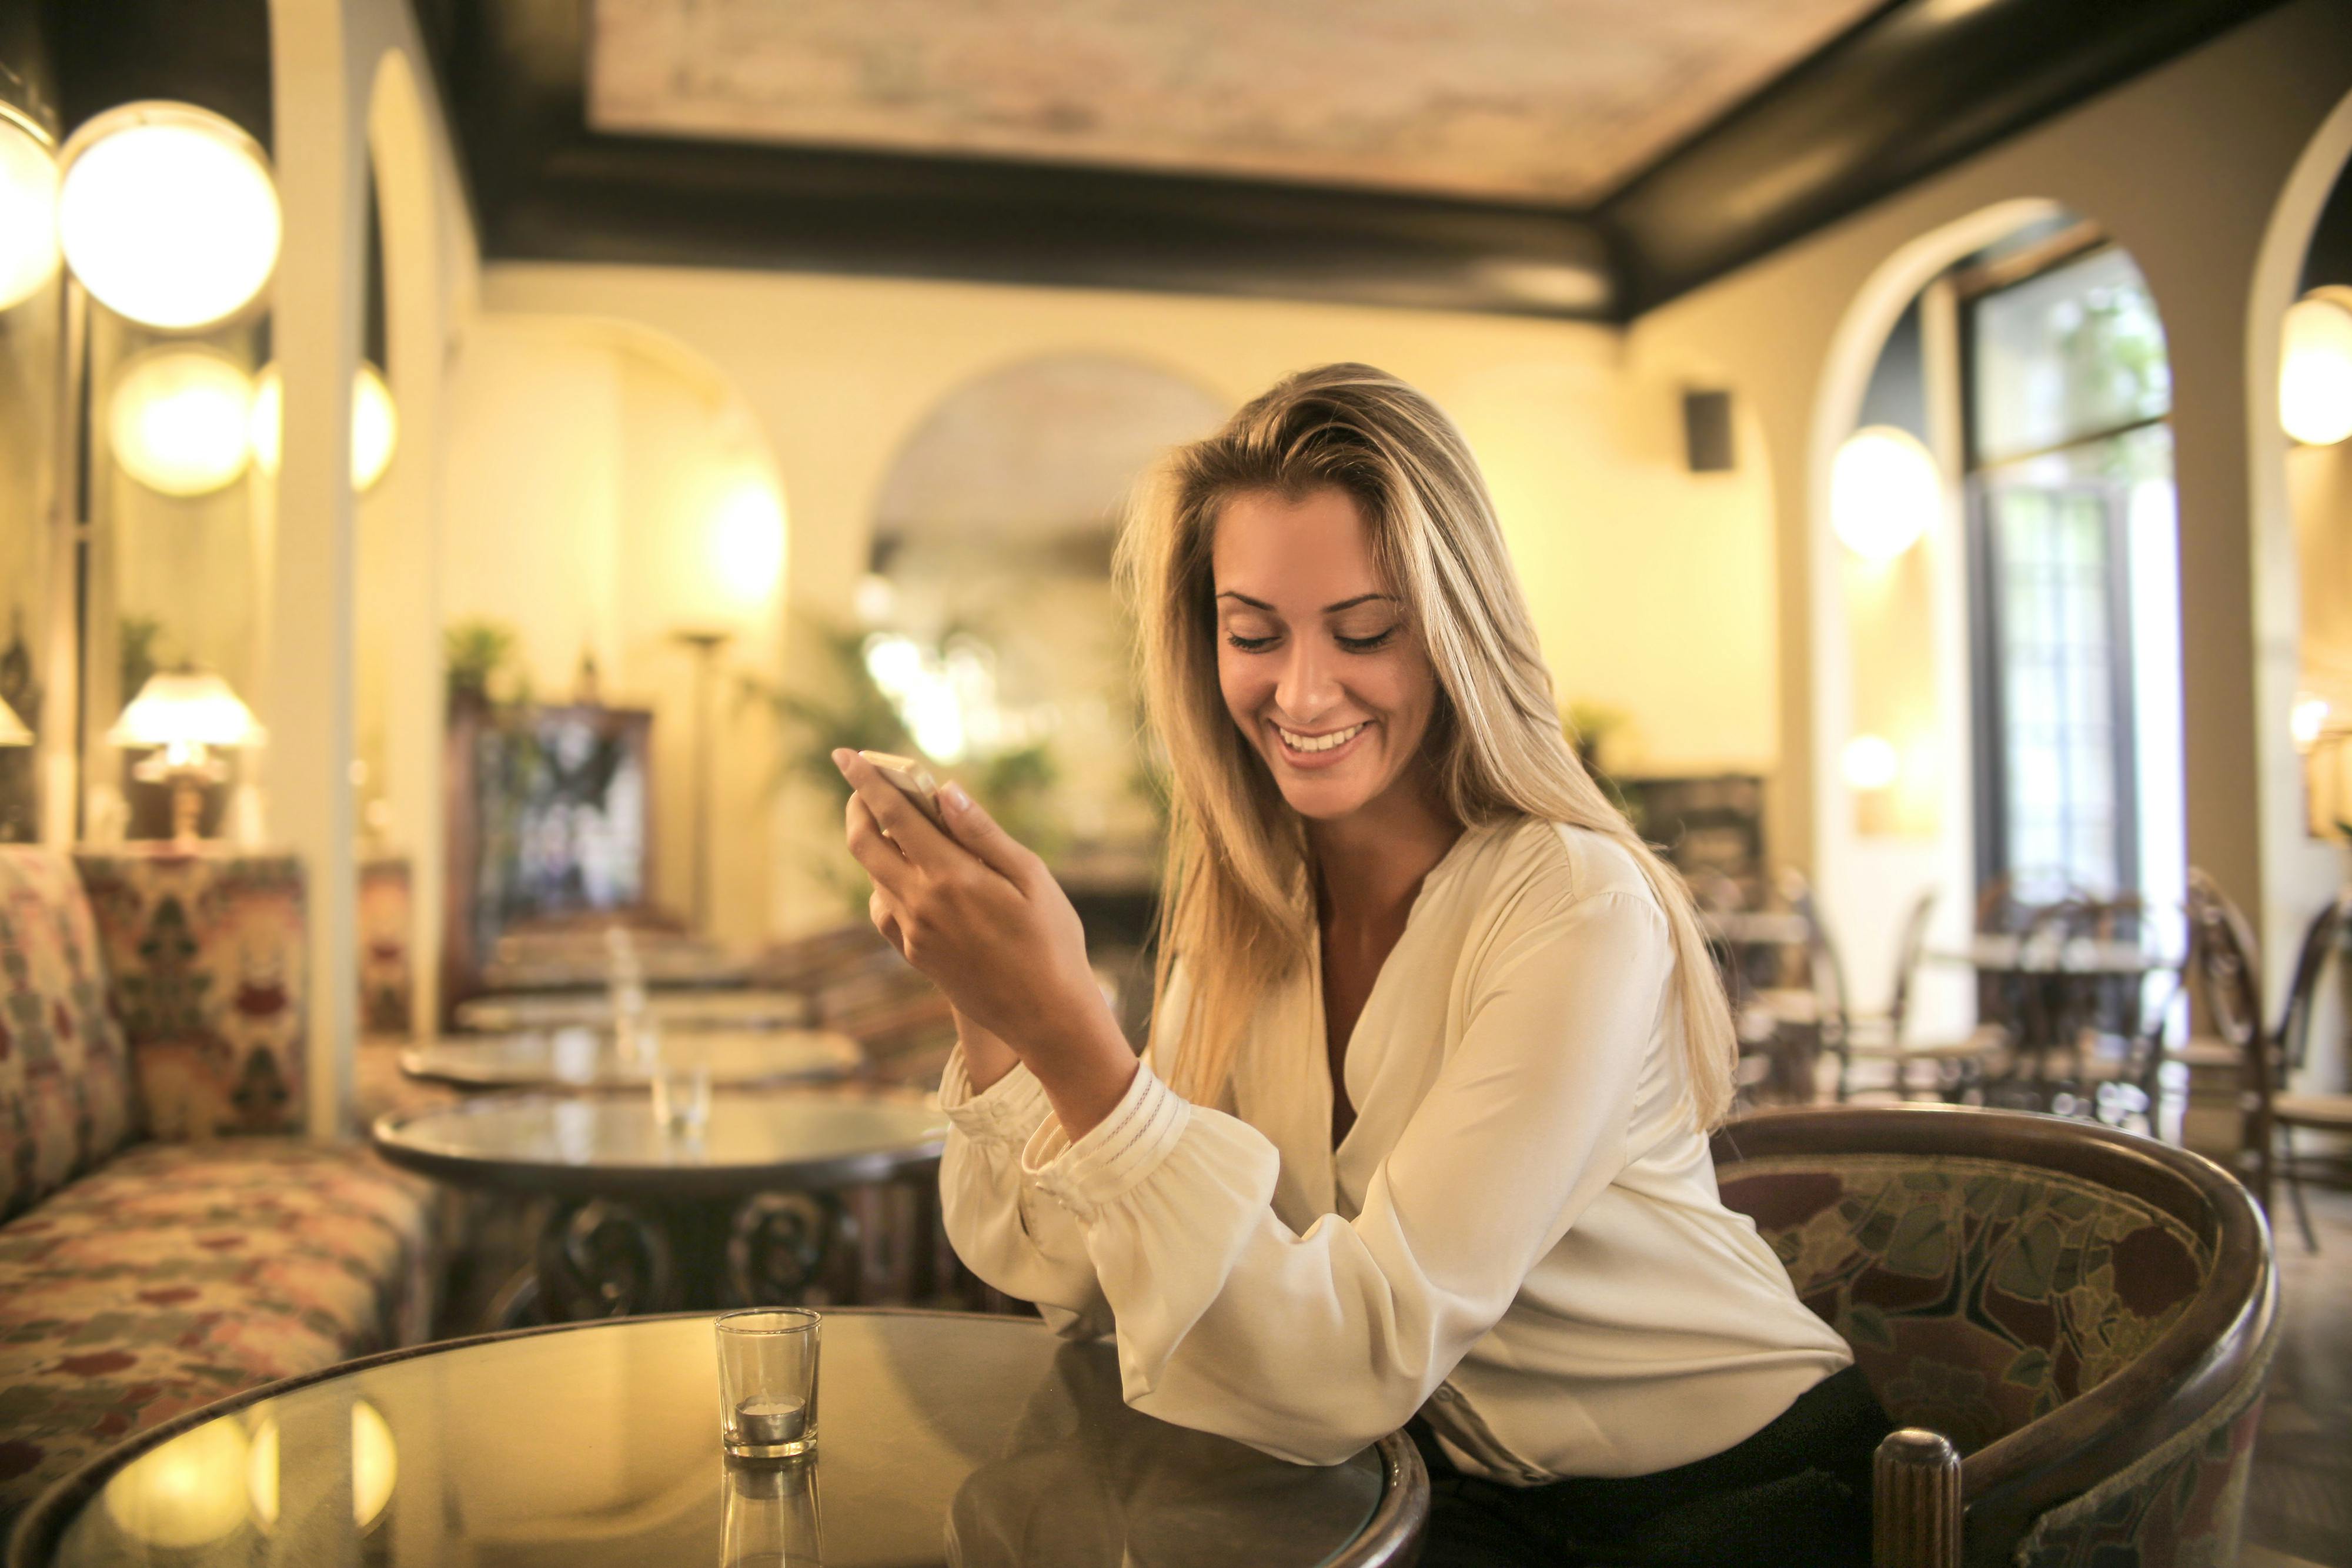 Une femme apparemment heureuse en brandissant son téléphone | Source : Pexels